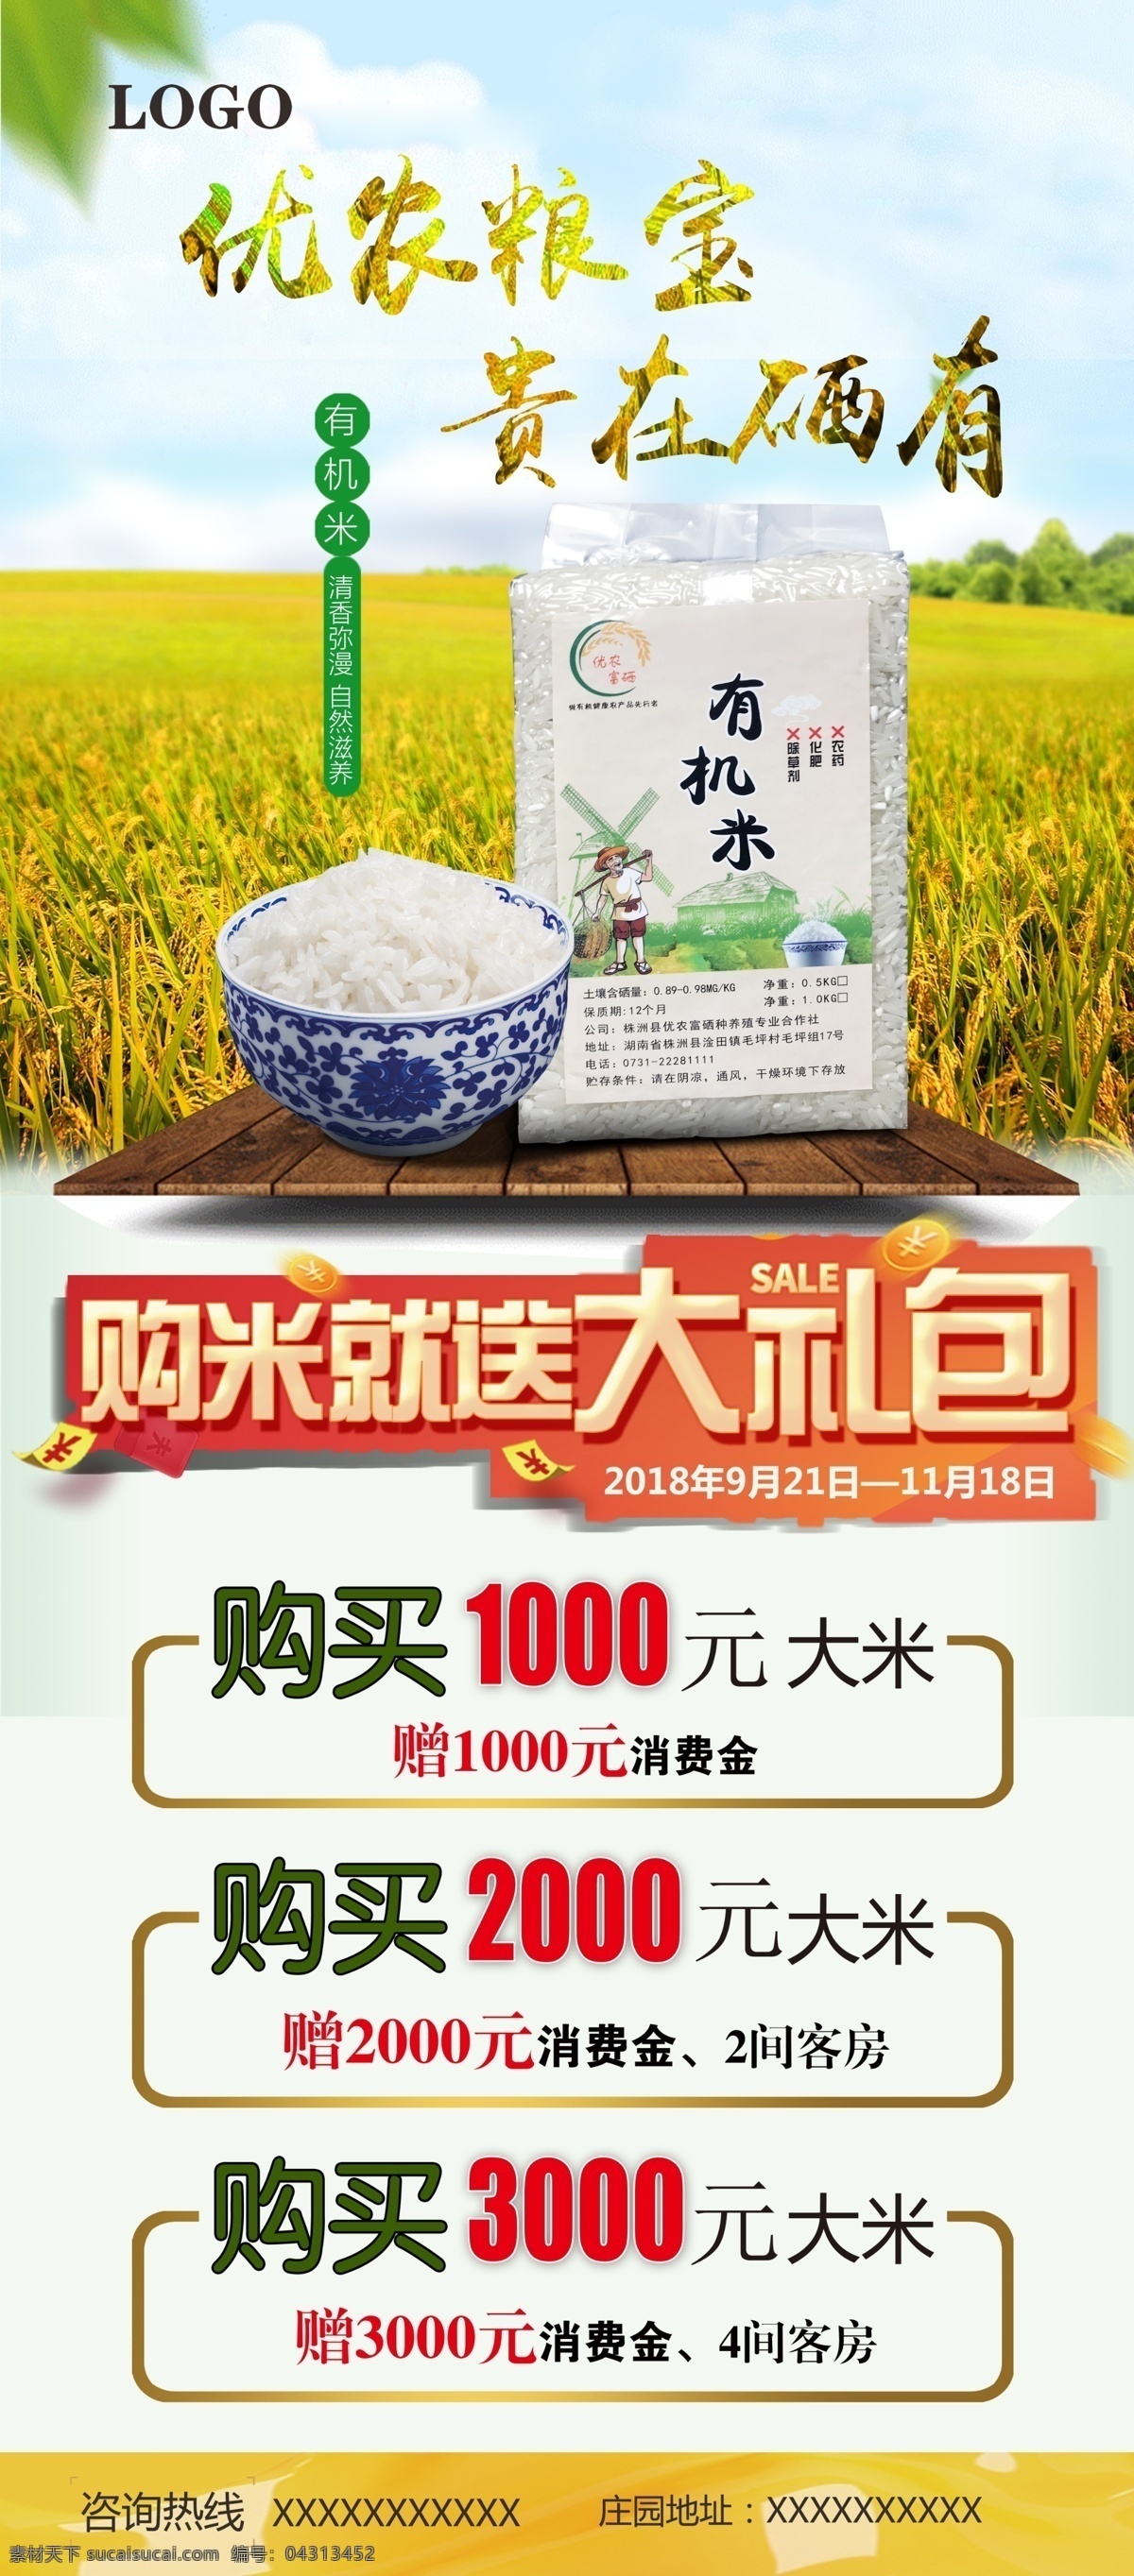 大米 促销活动 海报 大米海报 稻谷图片 有机米 活动展架 大米展架 大米促销